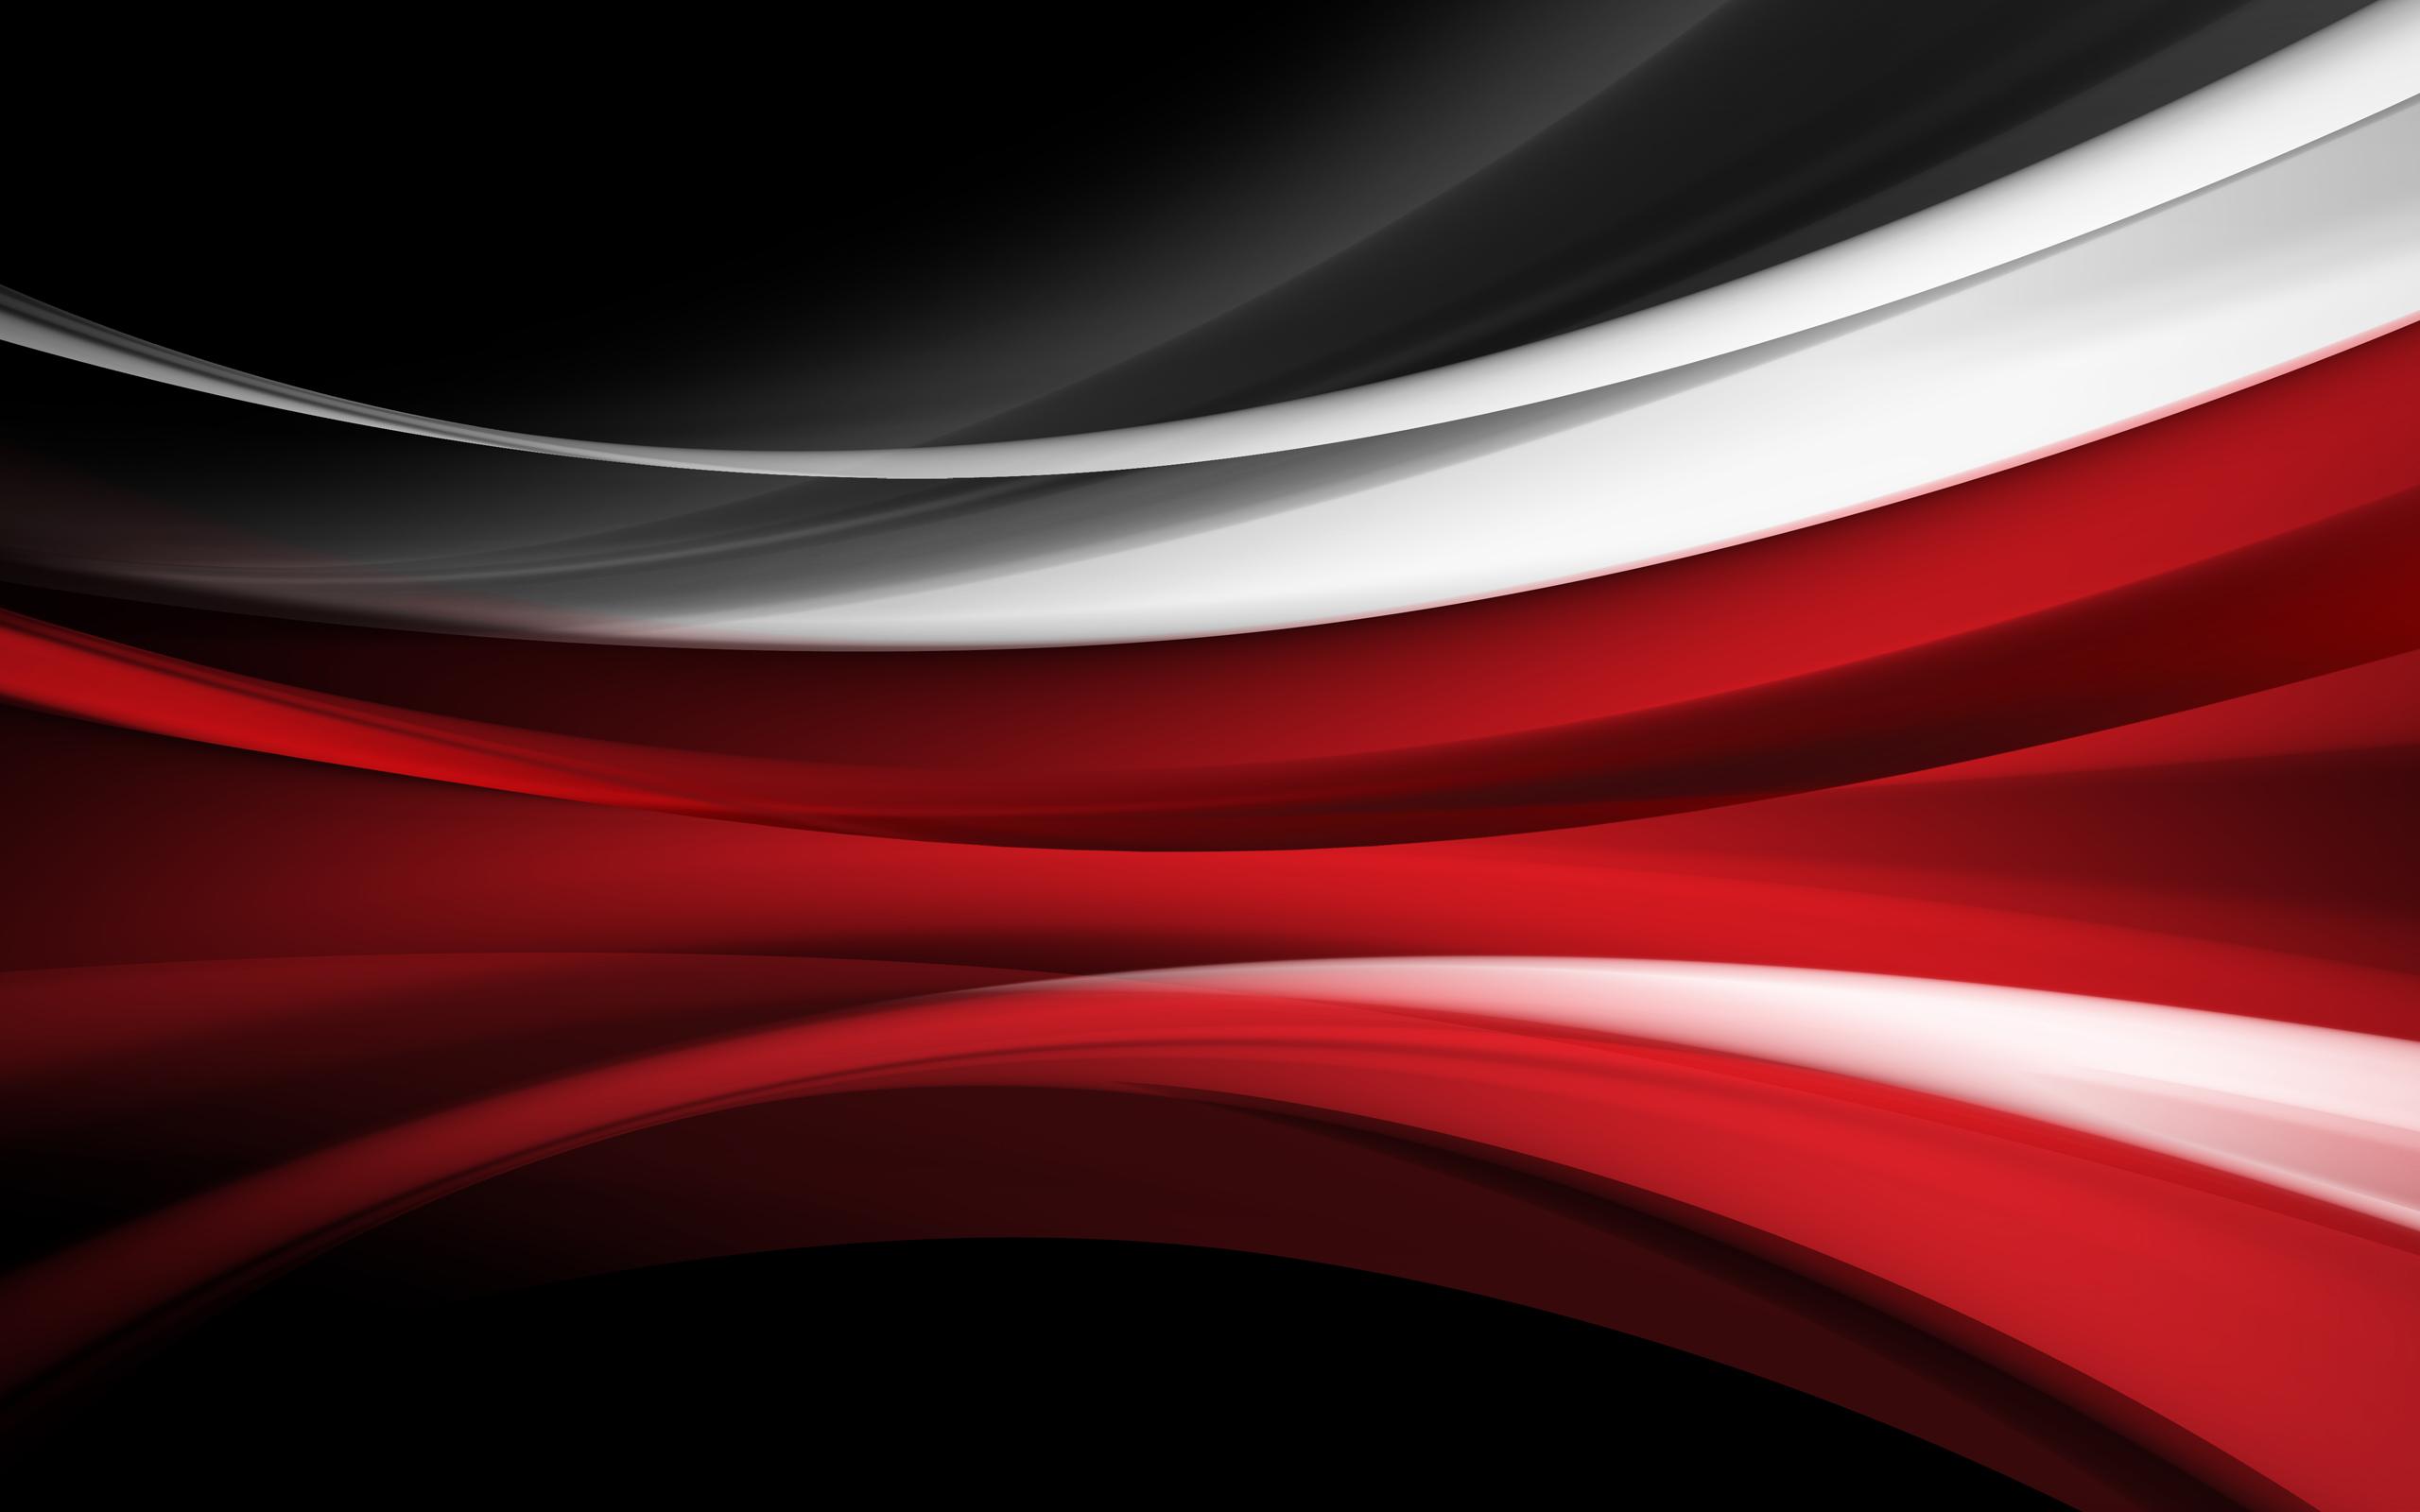 Download Gambar Black and Red Abstract Wallpaper Hd terbaru 2020